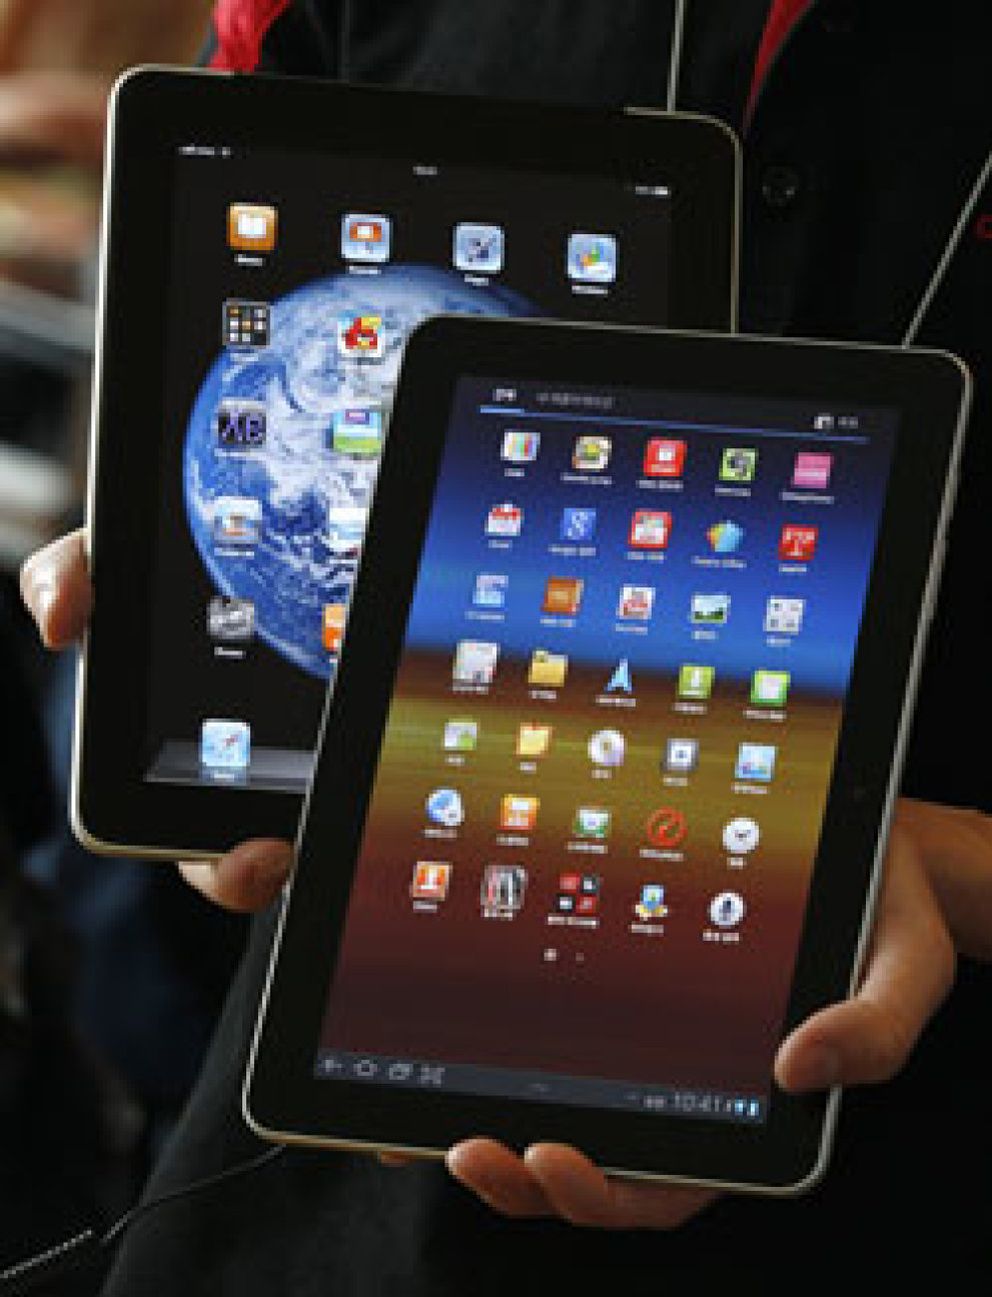 Foto: El sector de medios y ocio crecerá en España gracias a los 'tablets' y los móviles